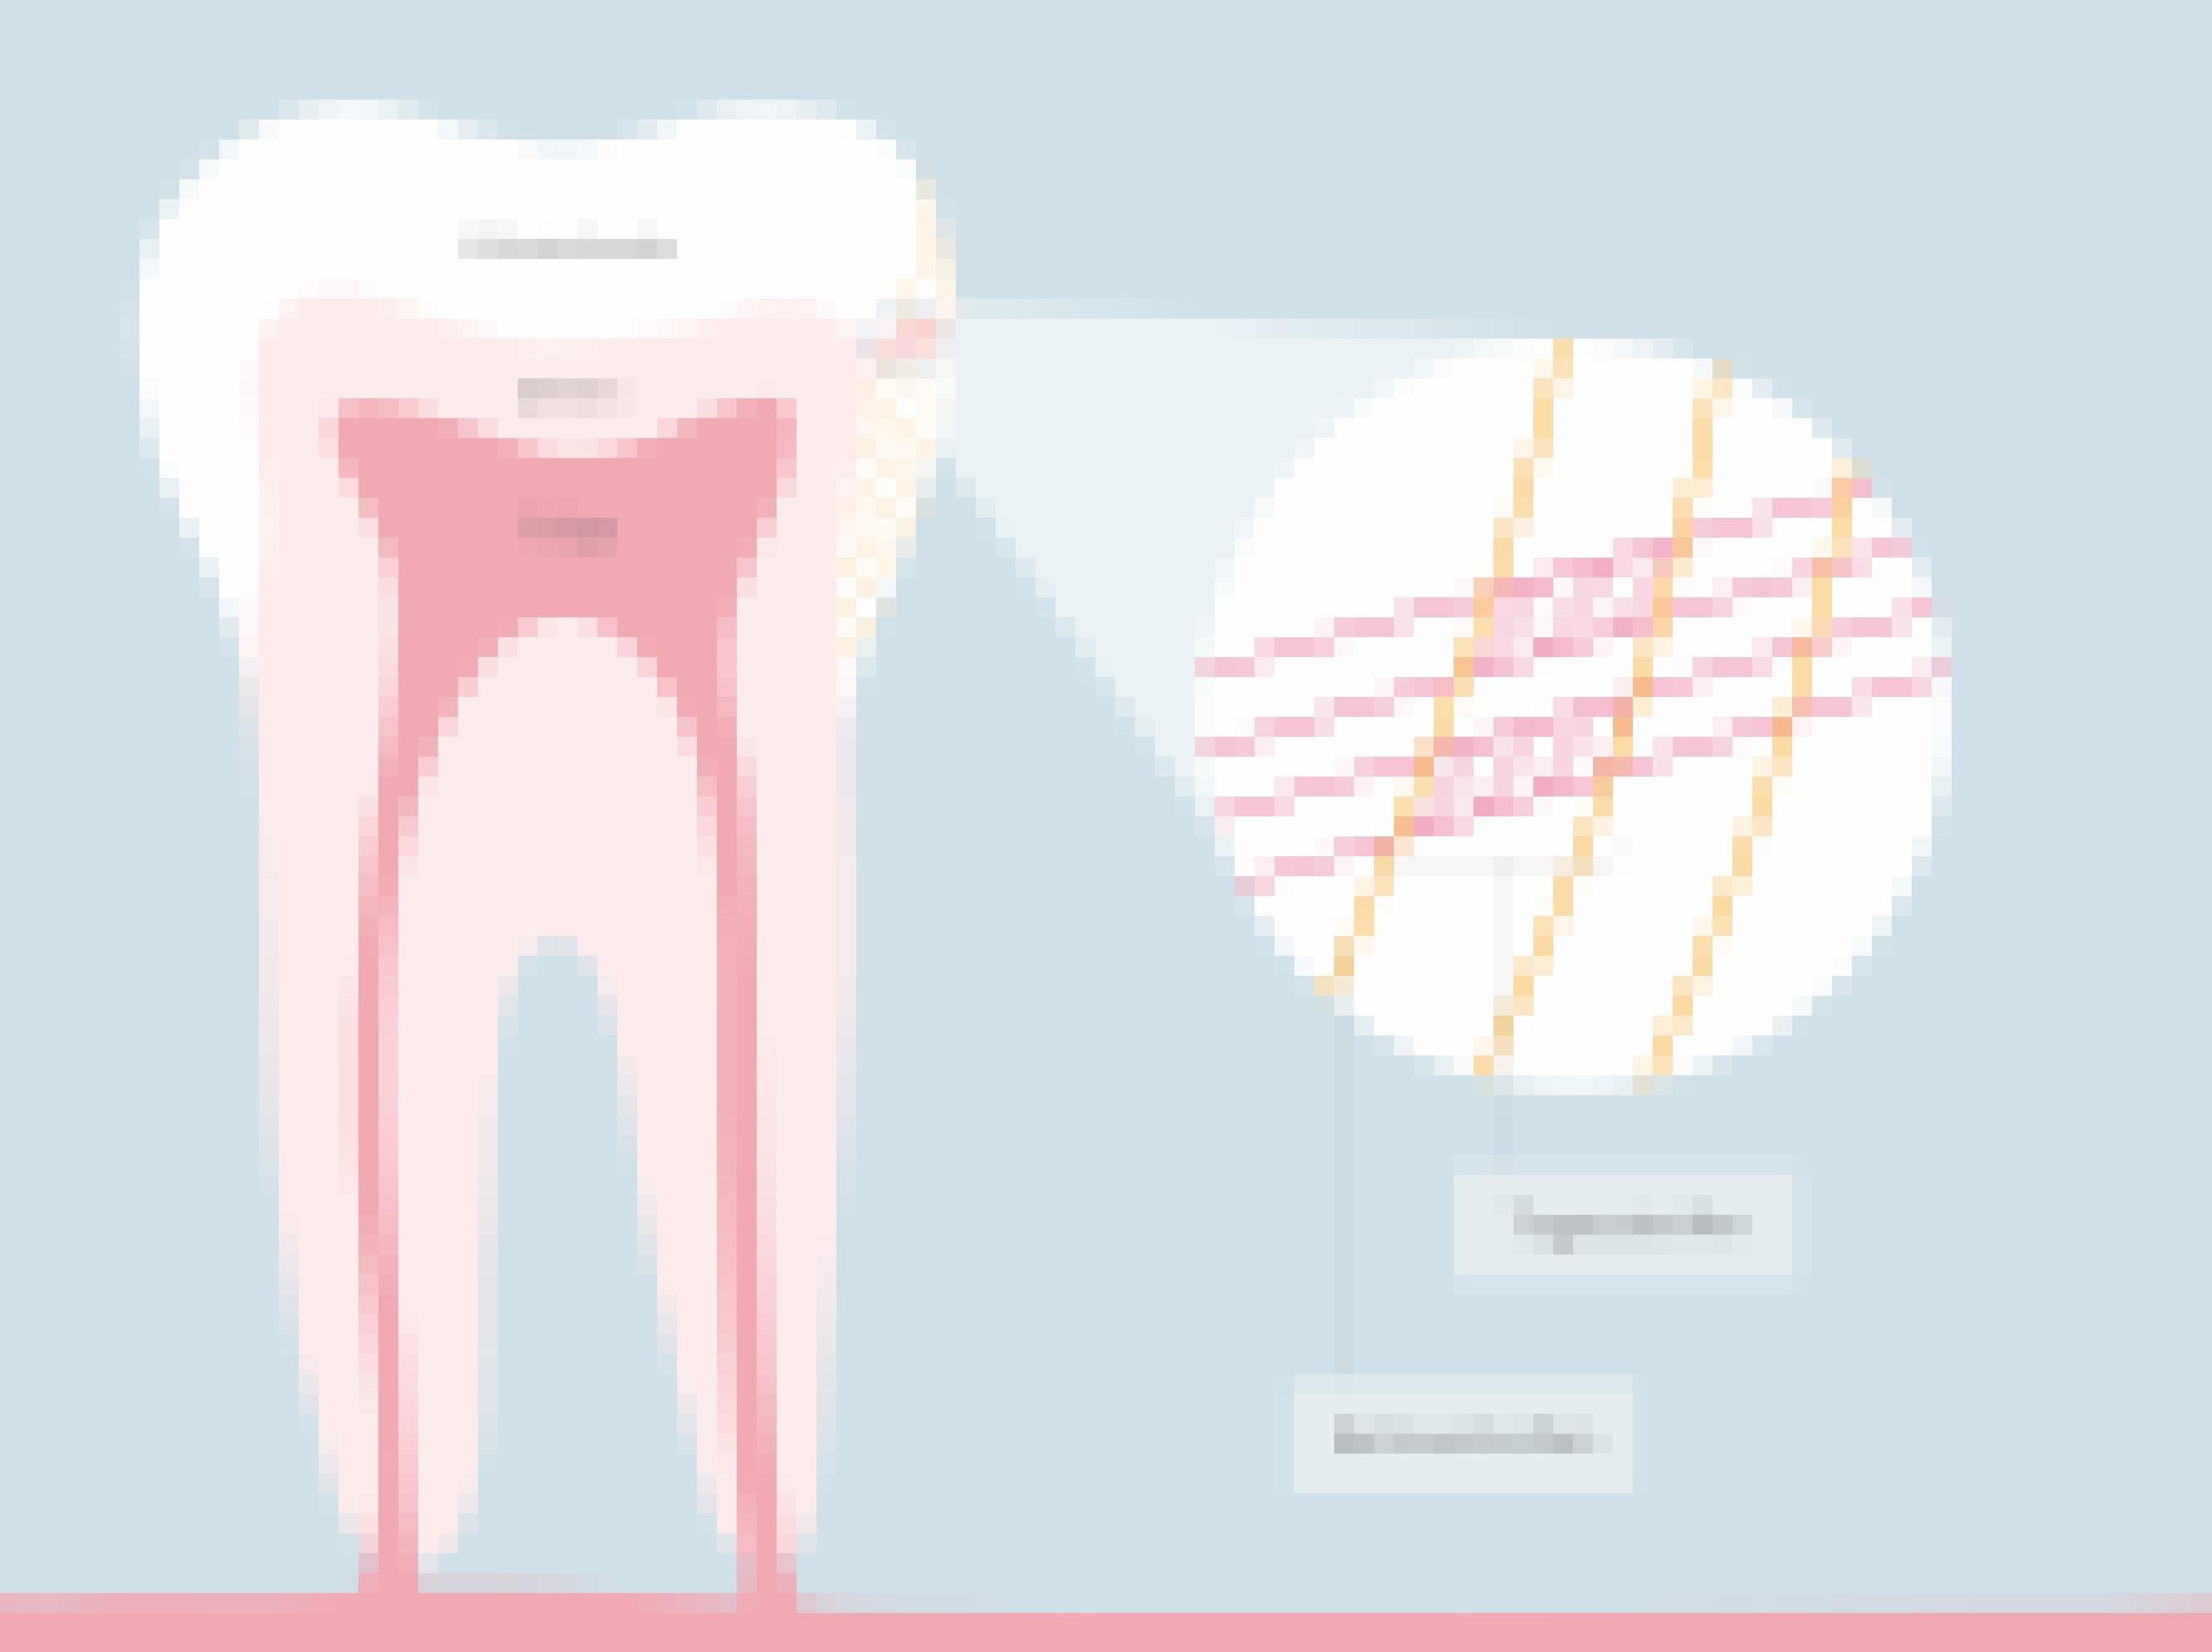 Eine Grafik von einem Zahn und dessen Retziusstreifen